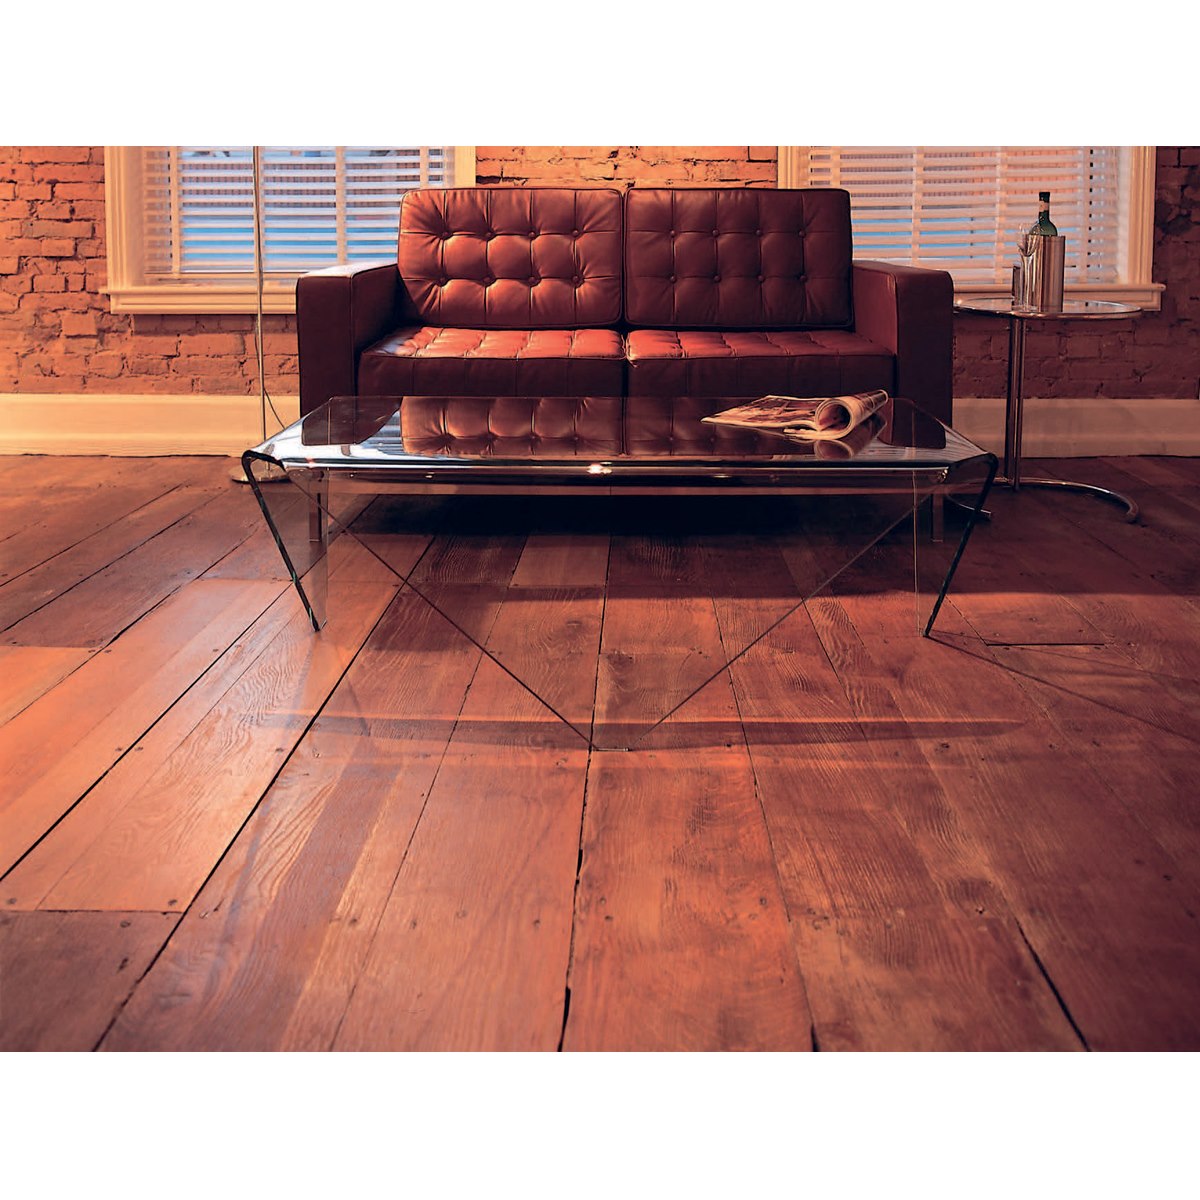 Liberon Wood Floor Sealer